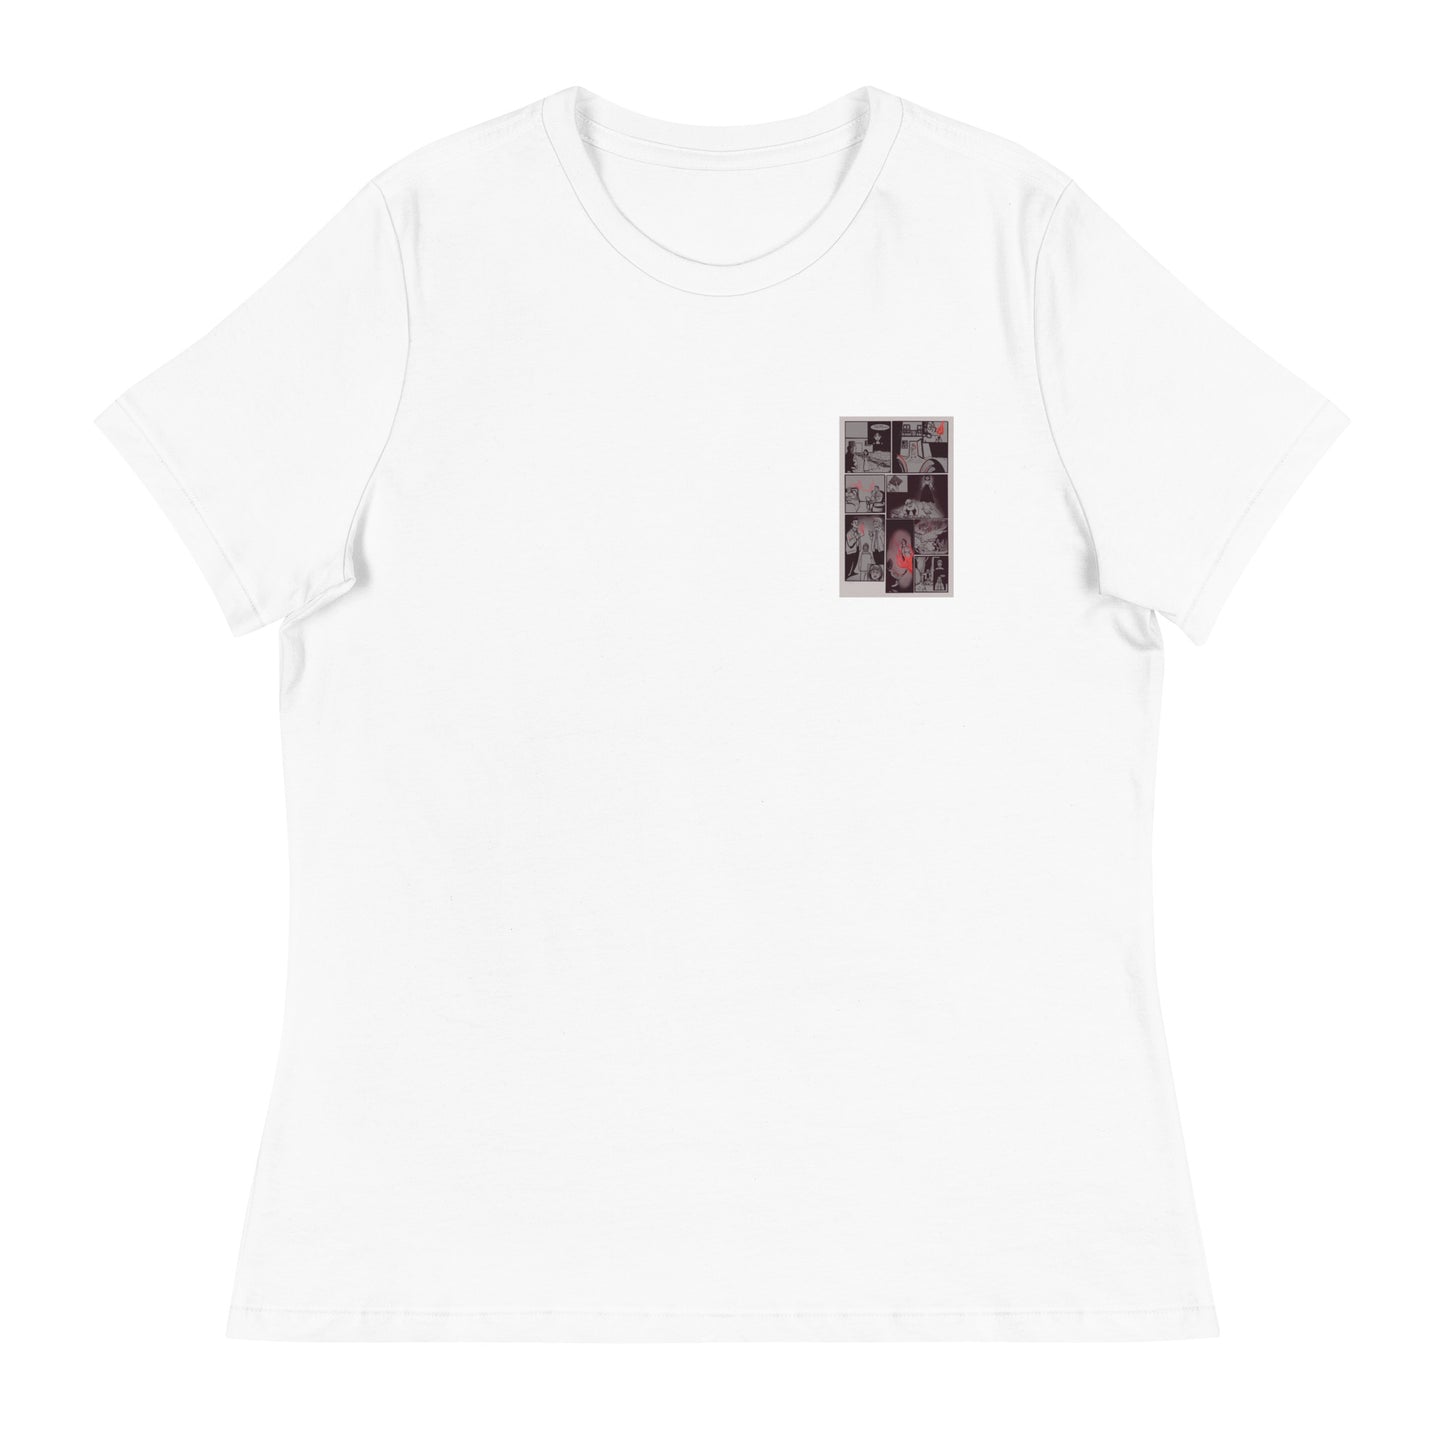 Fahrenheit 451 - Women's T-Shirt